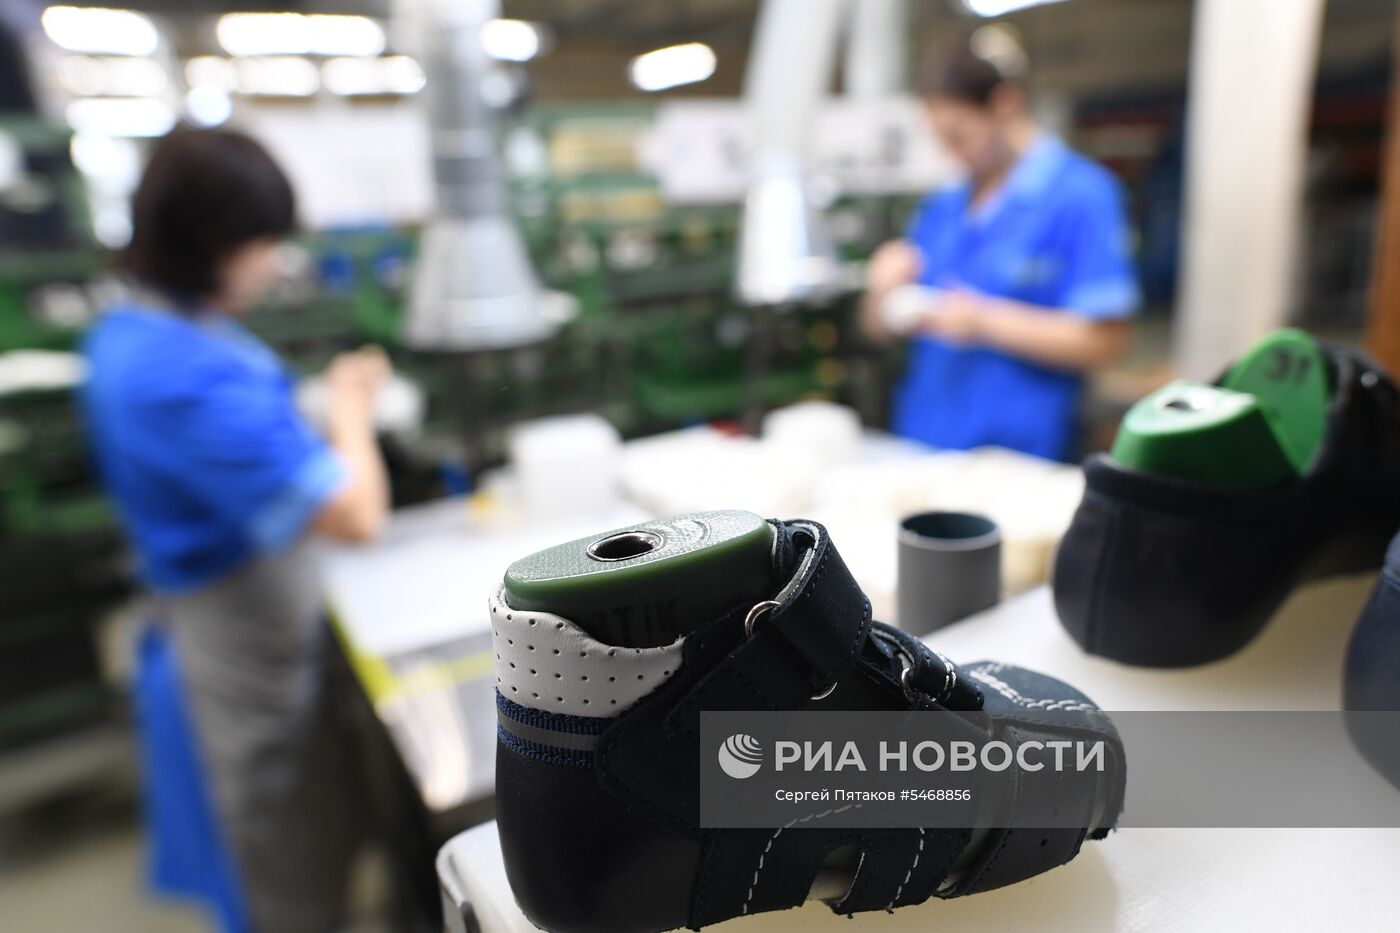 Обувная фабрика "Котофей" в Московской области